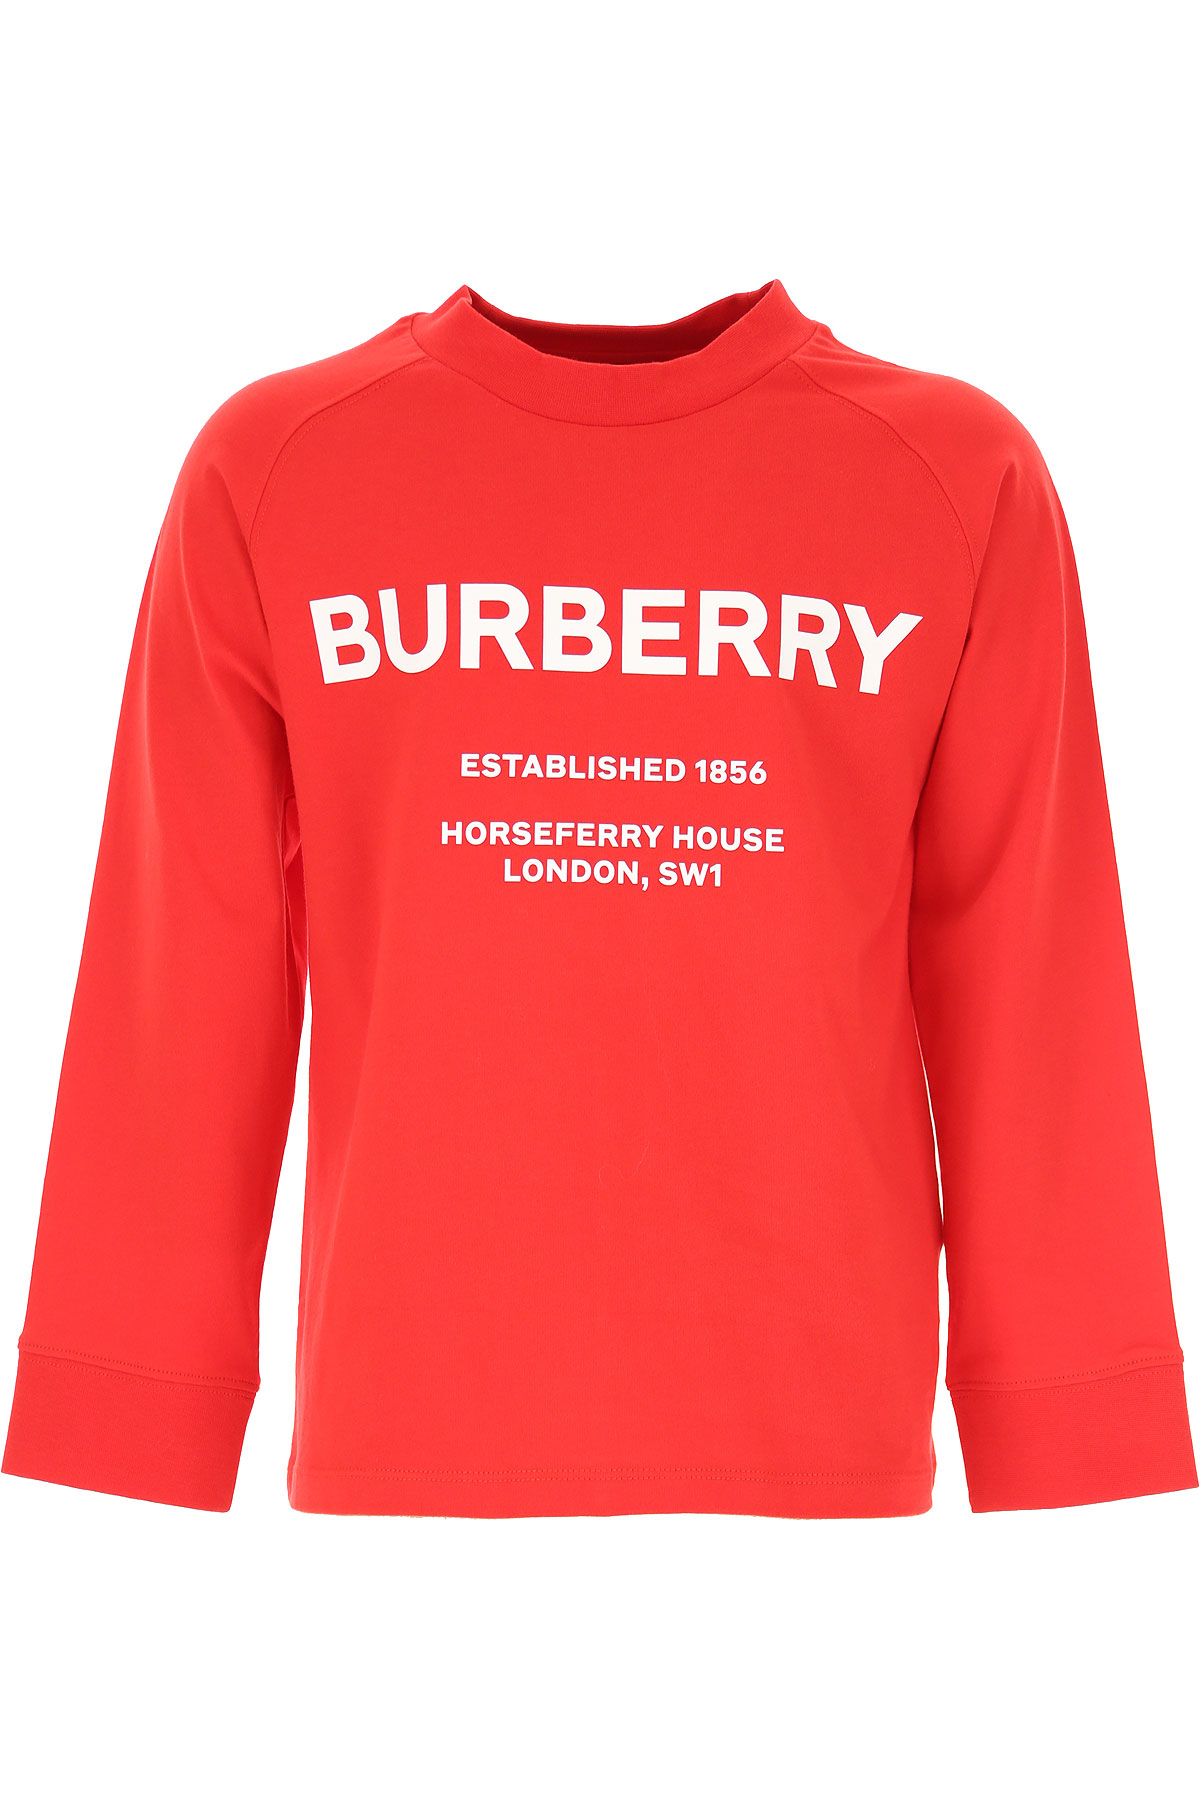 Burberry Kinder T-Shirt für Jungen Günstig im Sale, Rot, Baumwolle, 2017, 10Y 12Y 3Y 4Y 6Y 8Y